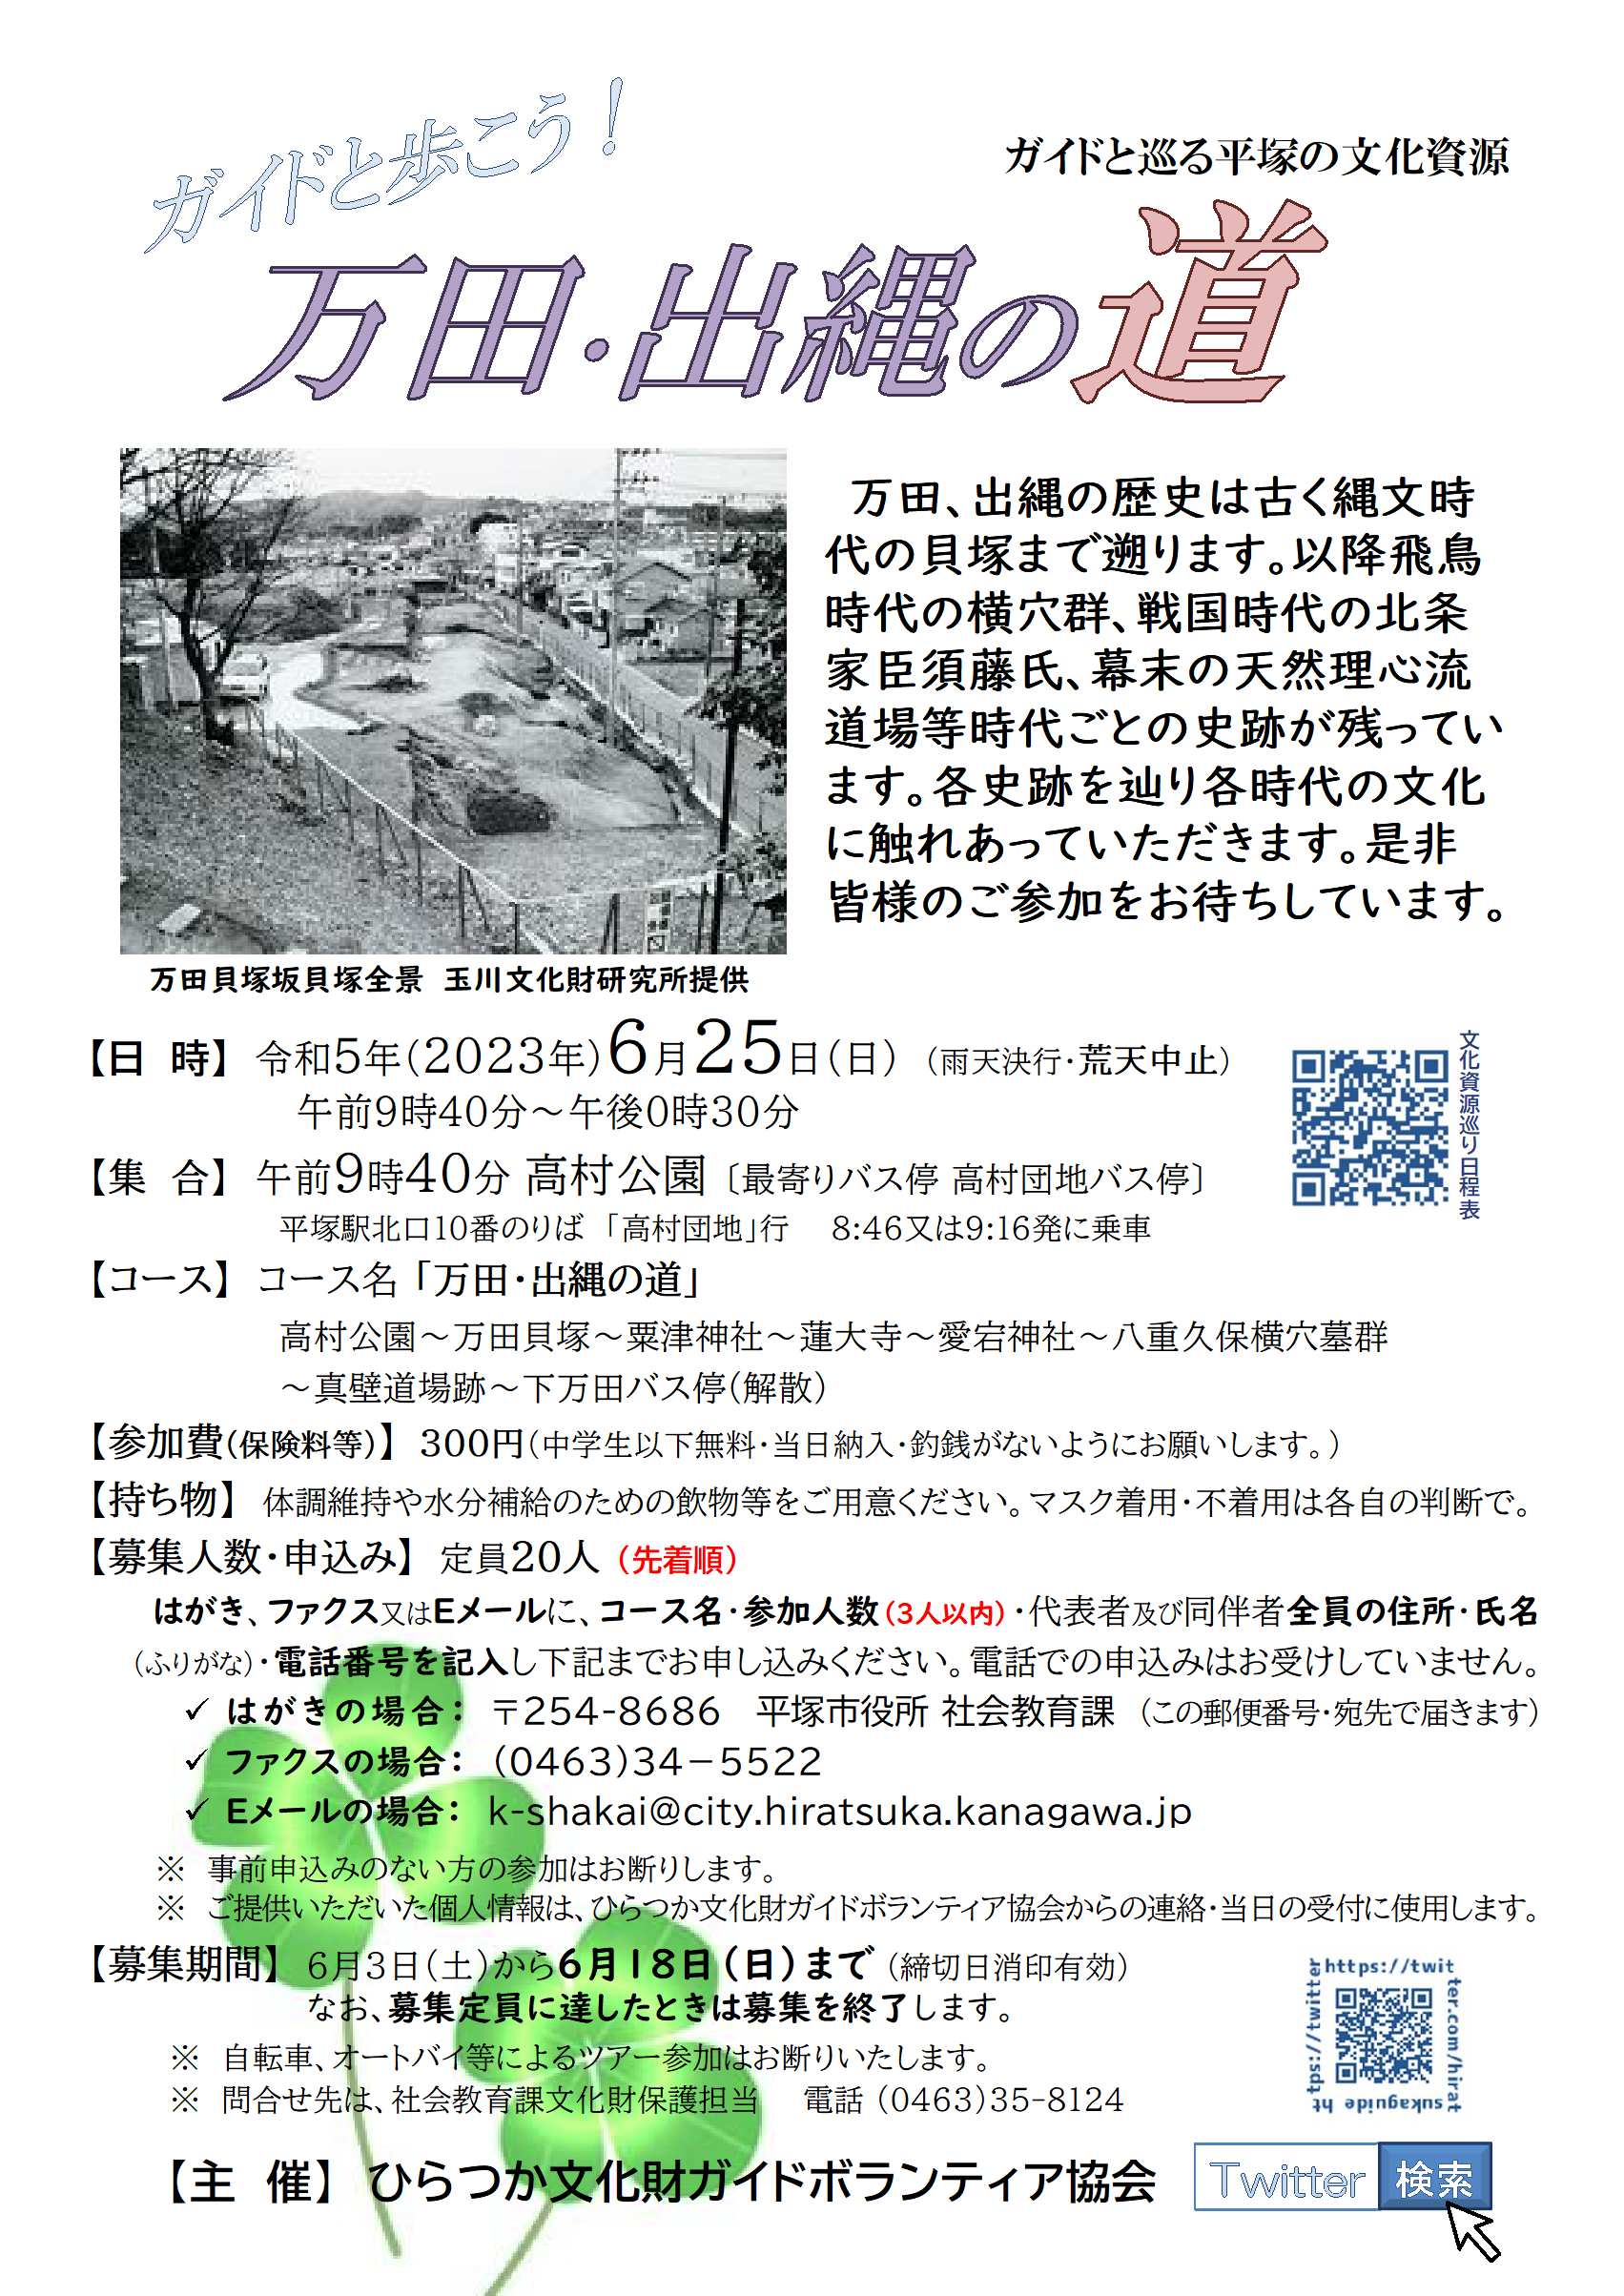 ガイドと巡る平塚の文化資源『万田・出縄の道』コース、6月25日 日曜日開催、申込先着順20人定員。